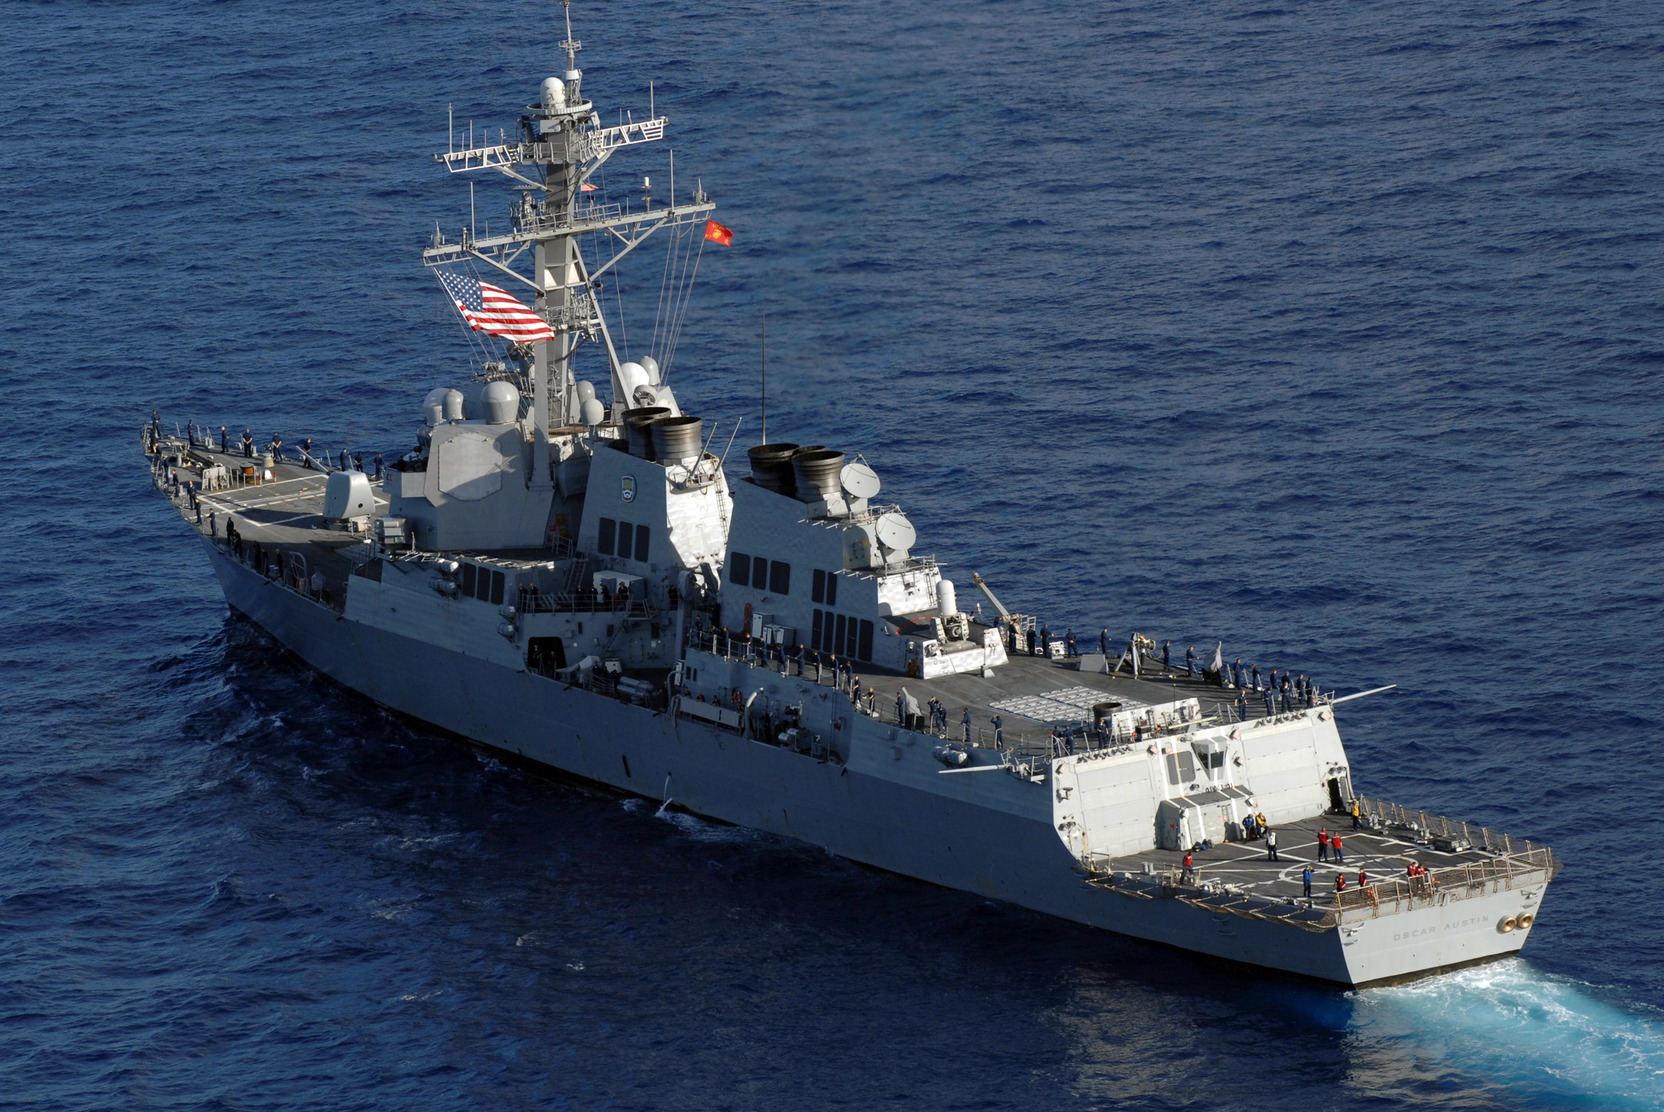 «Щекочут нервы»: Адмирал назвал хамством нарушение границы РФ эсминцем США